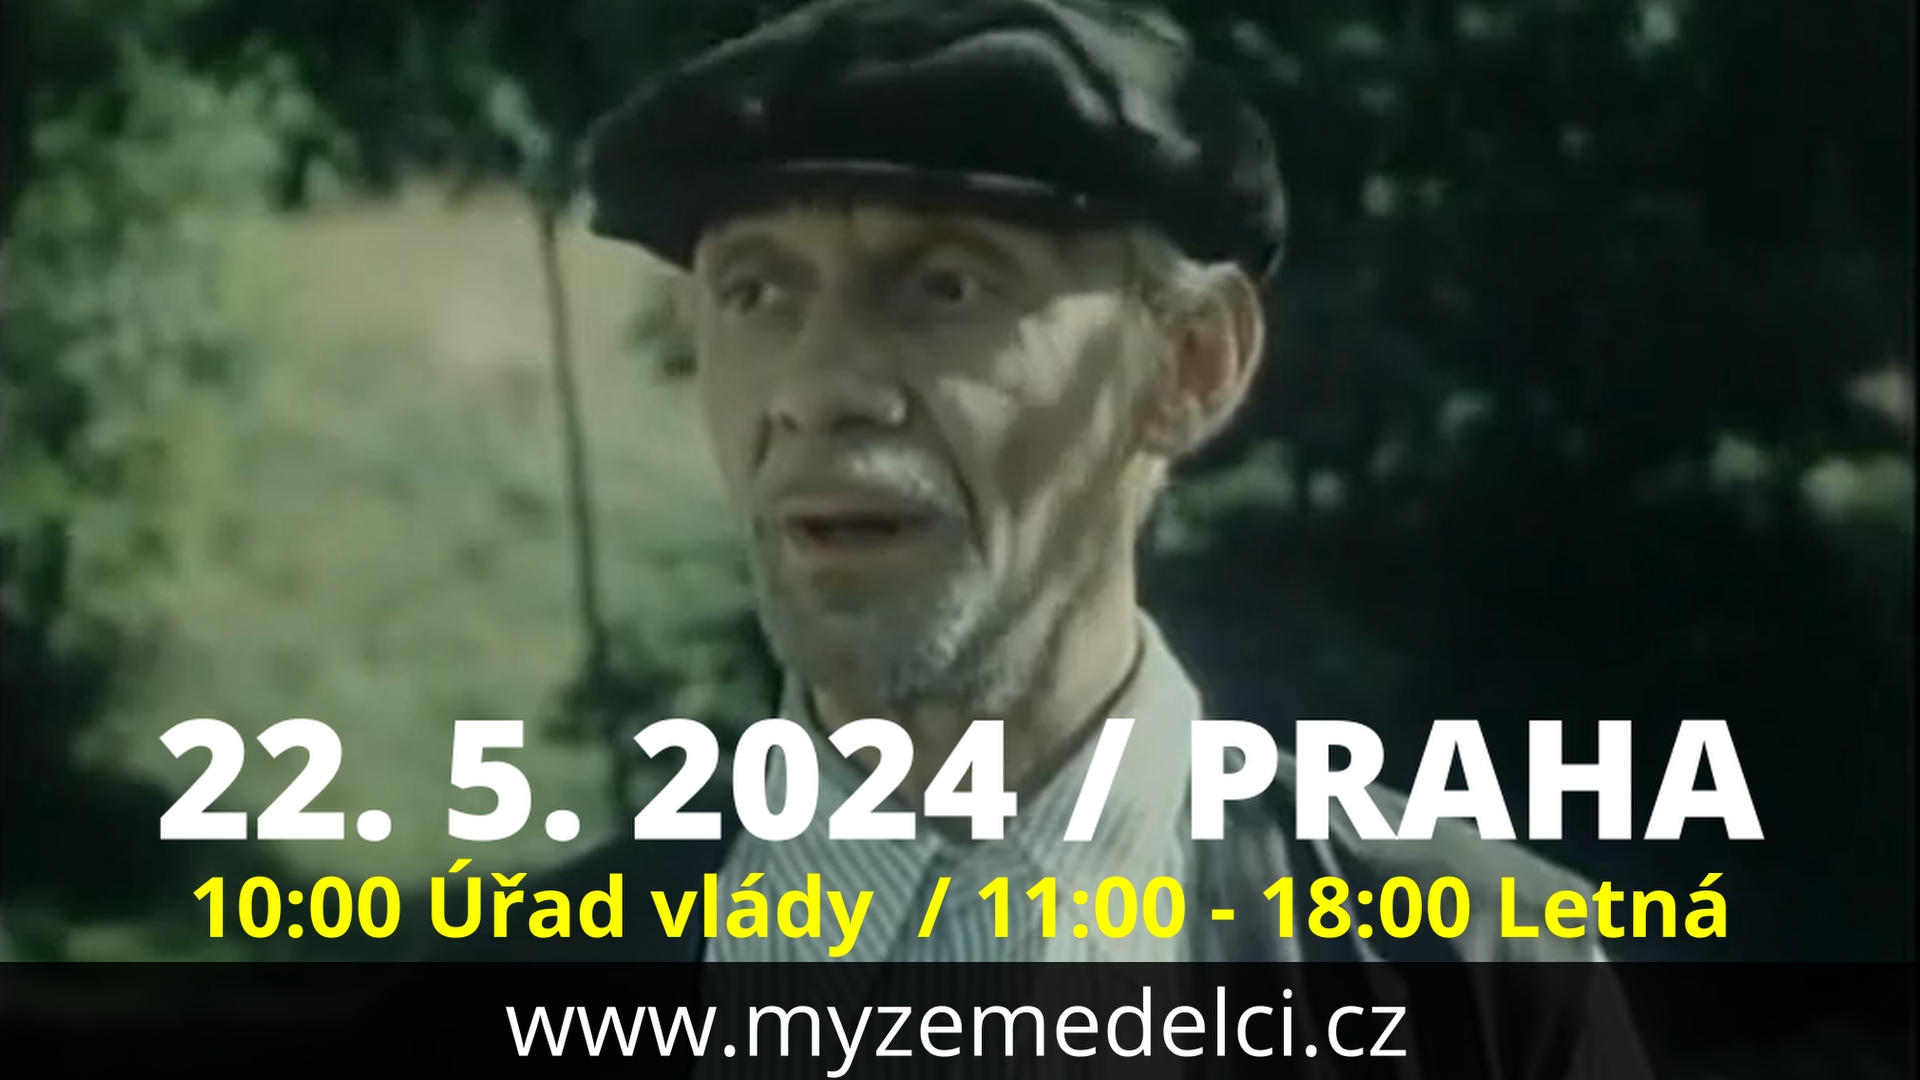 Dejme společně Greendealu na prd*l! Bude 22. 5. 2024 v Praze pořádně pohnojeno? Držme zemědělcům palce!